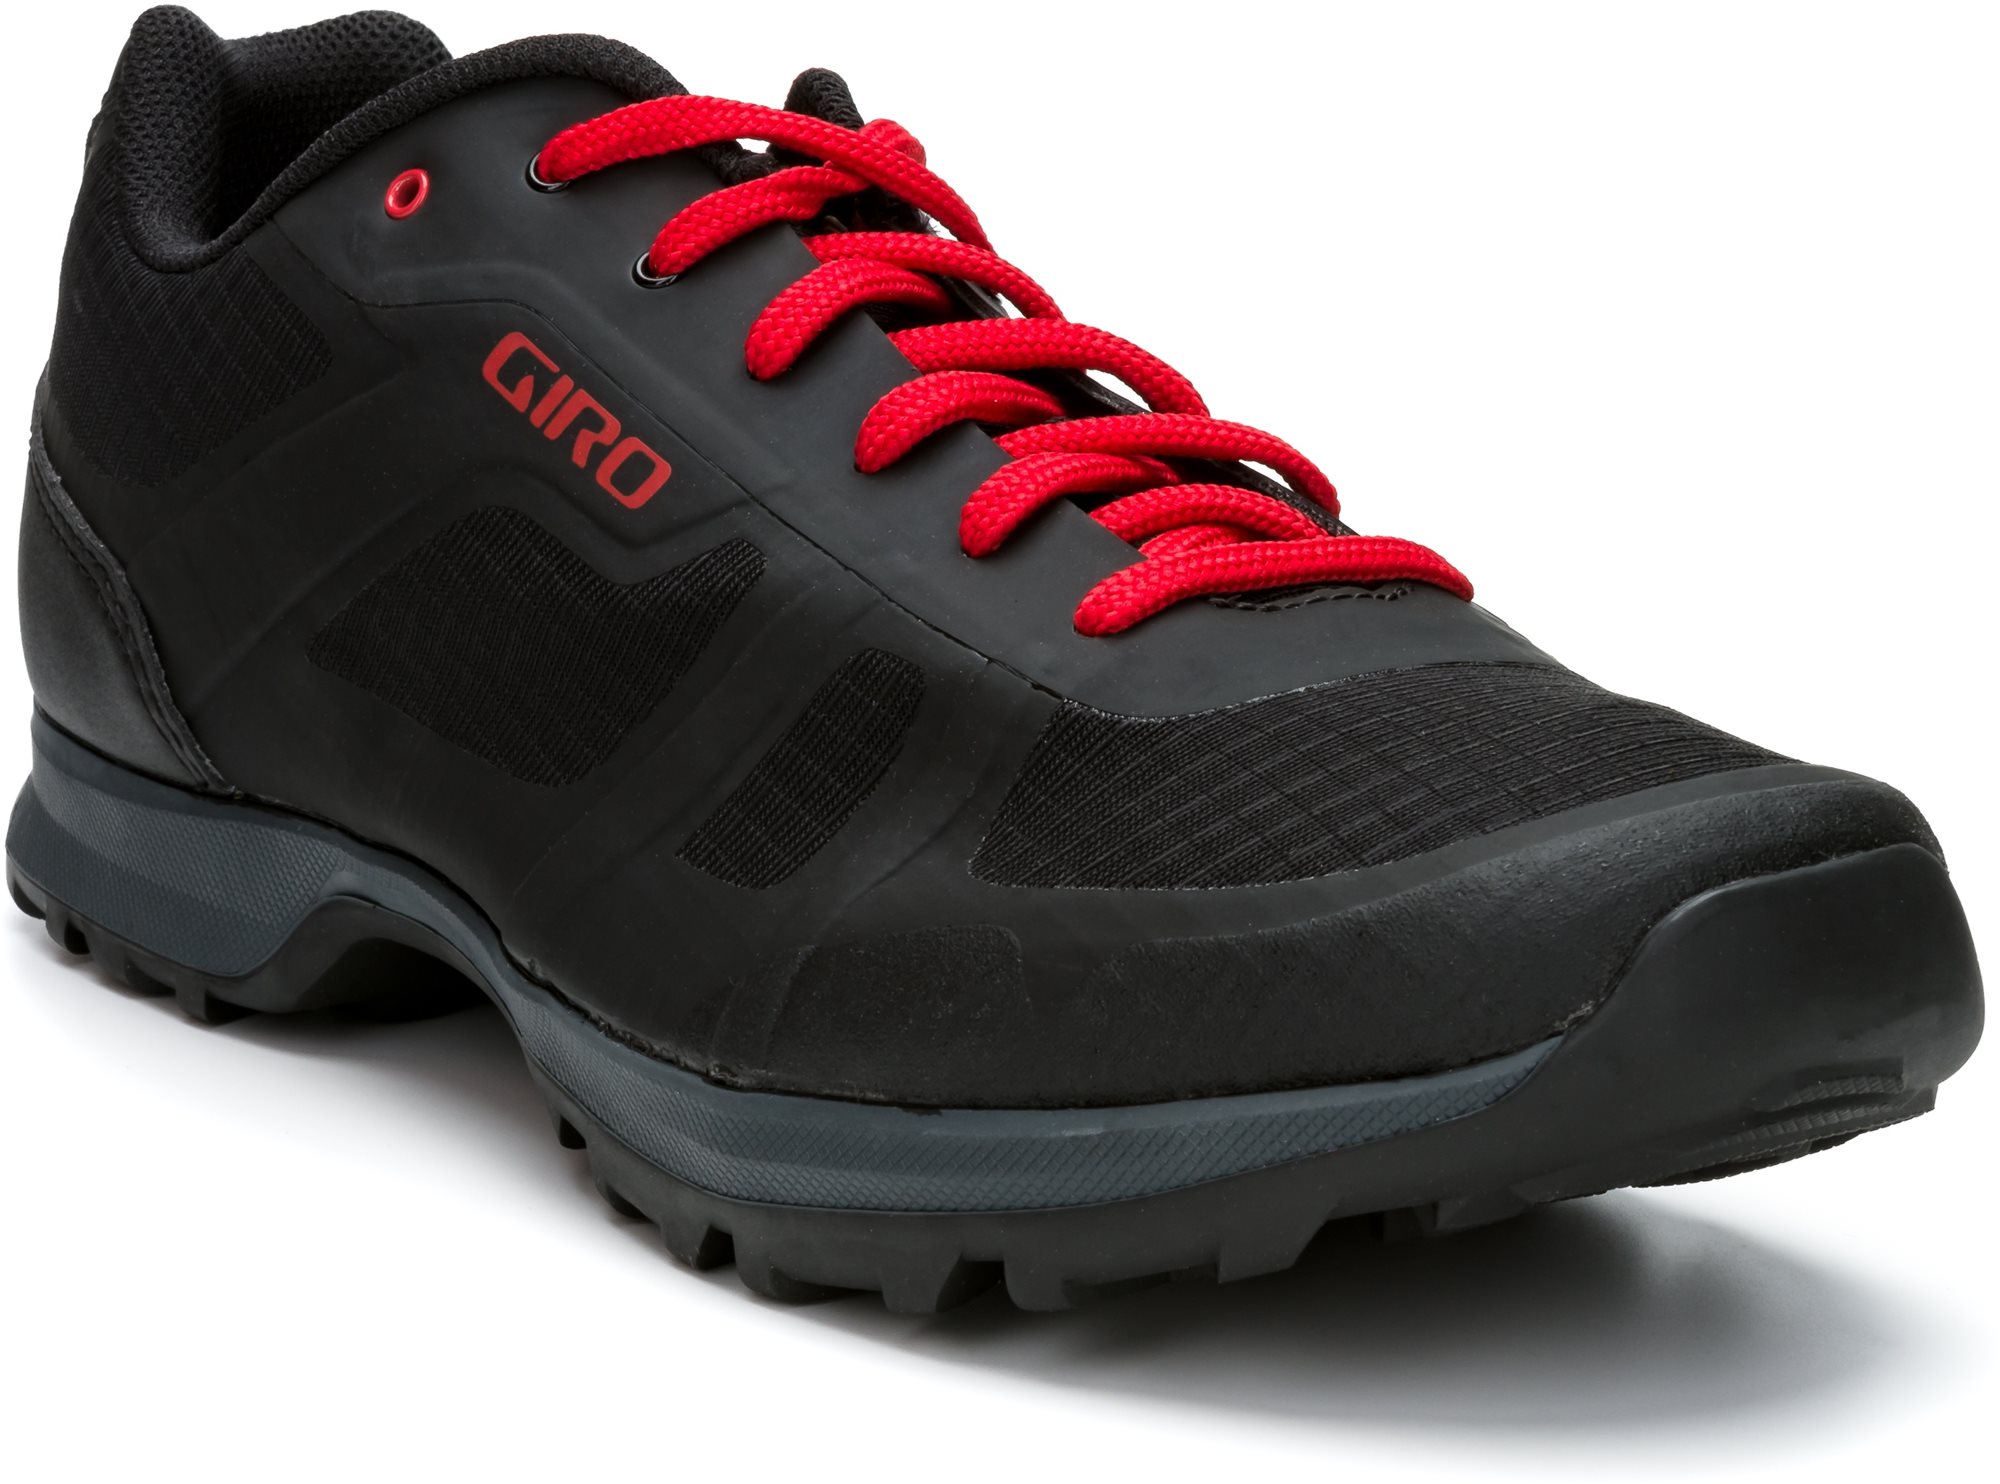 GIRO Gauge kerékpáros cipő, fekete/világos piros, 42-es